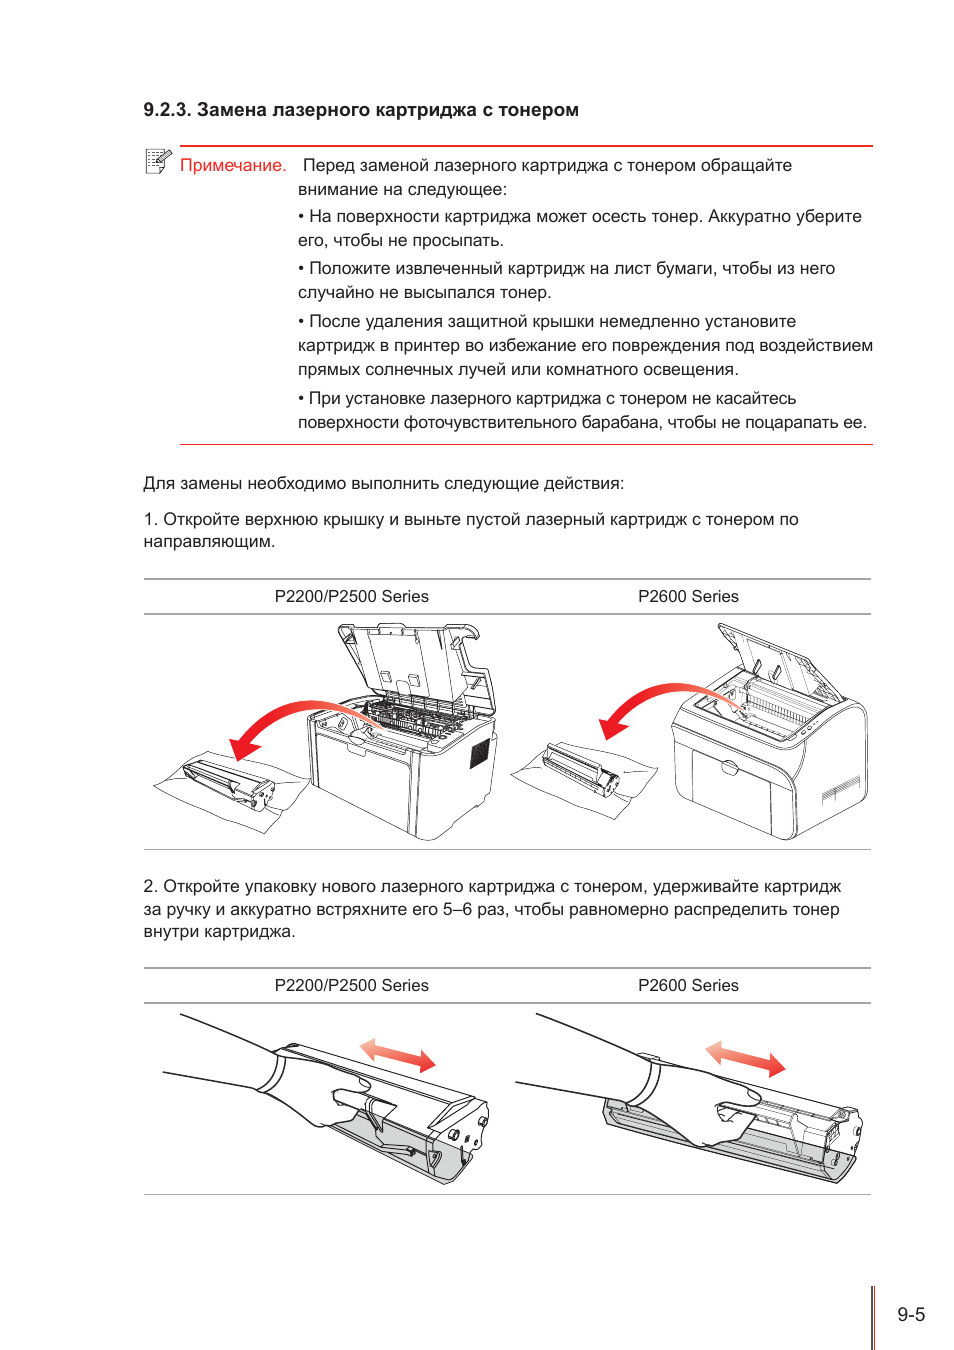 Замена картриджа в принтере — подробная инструкция